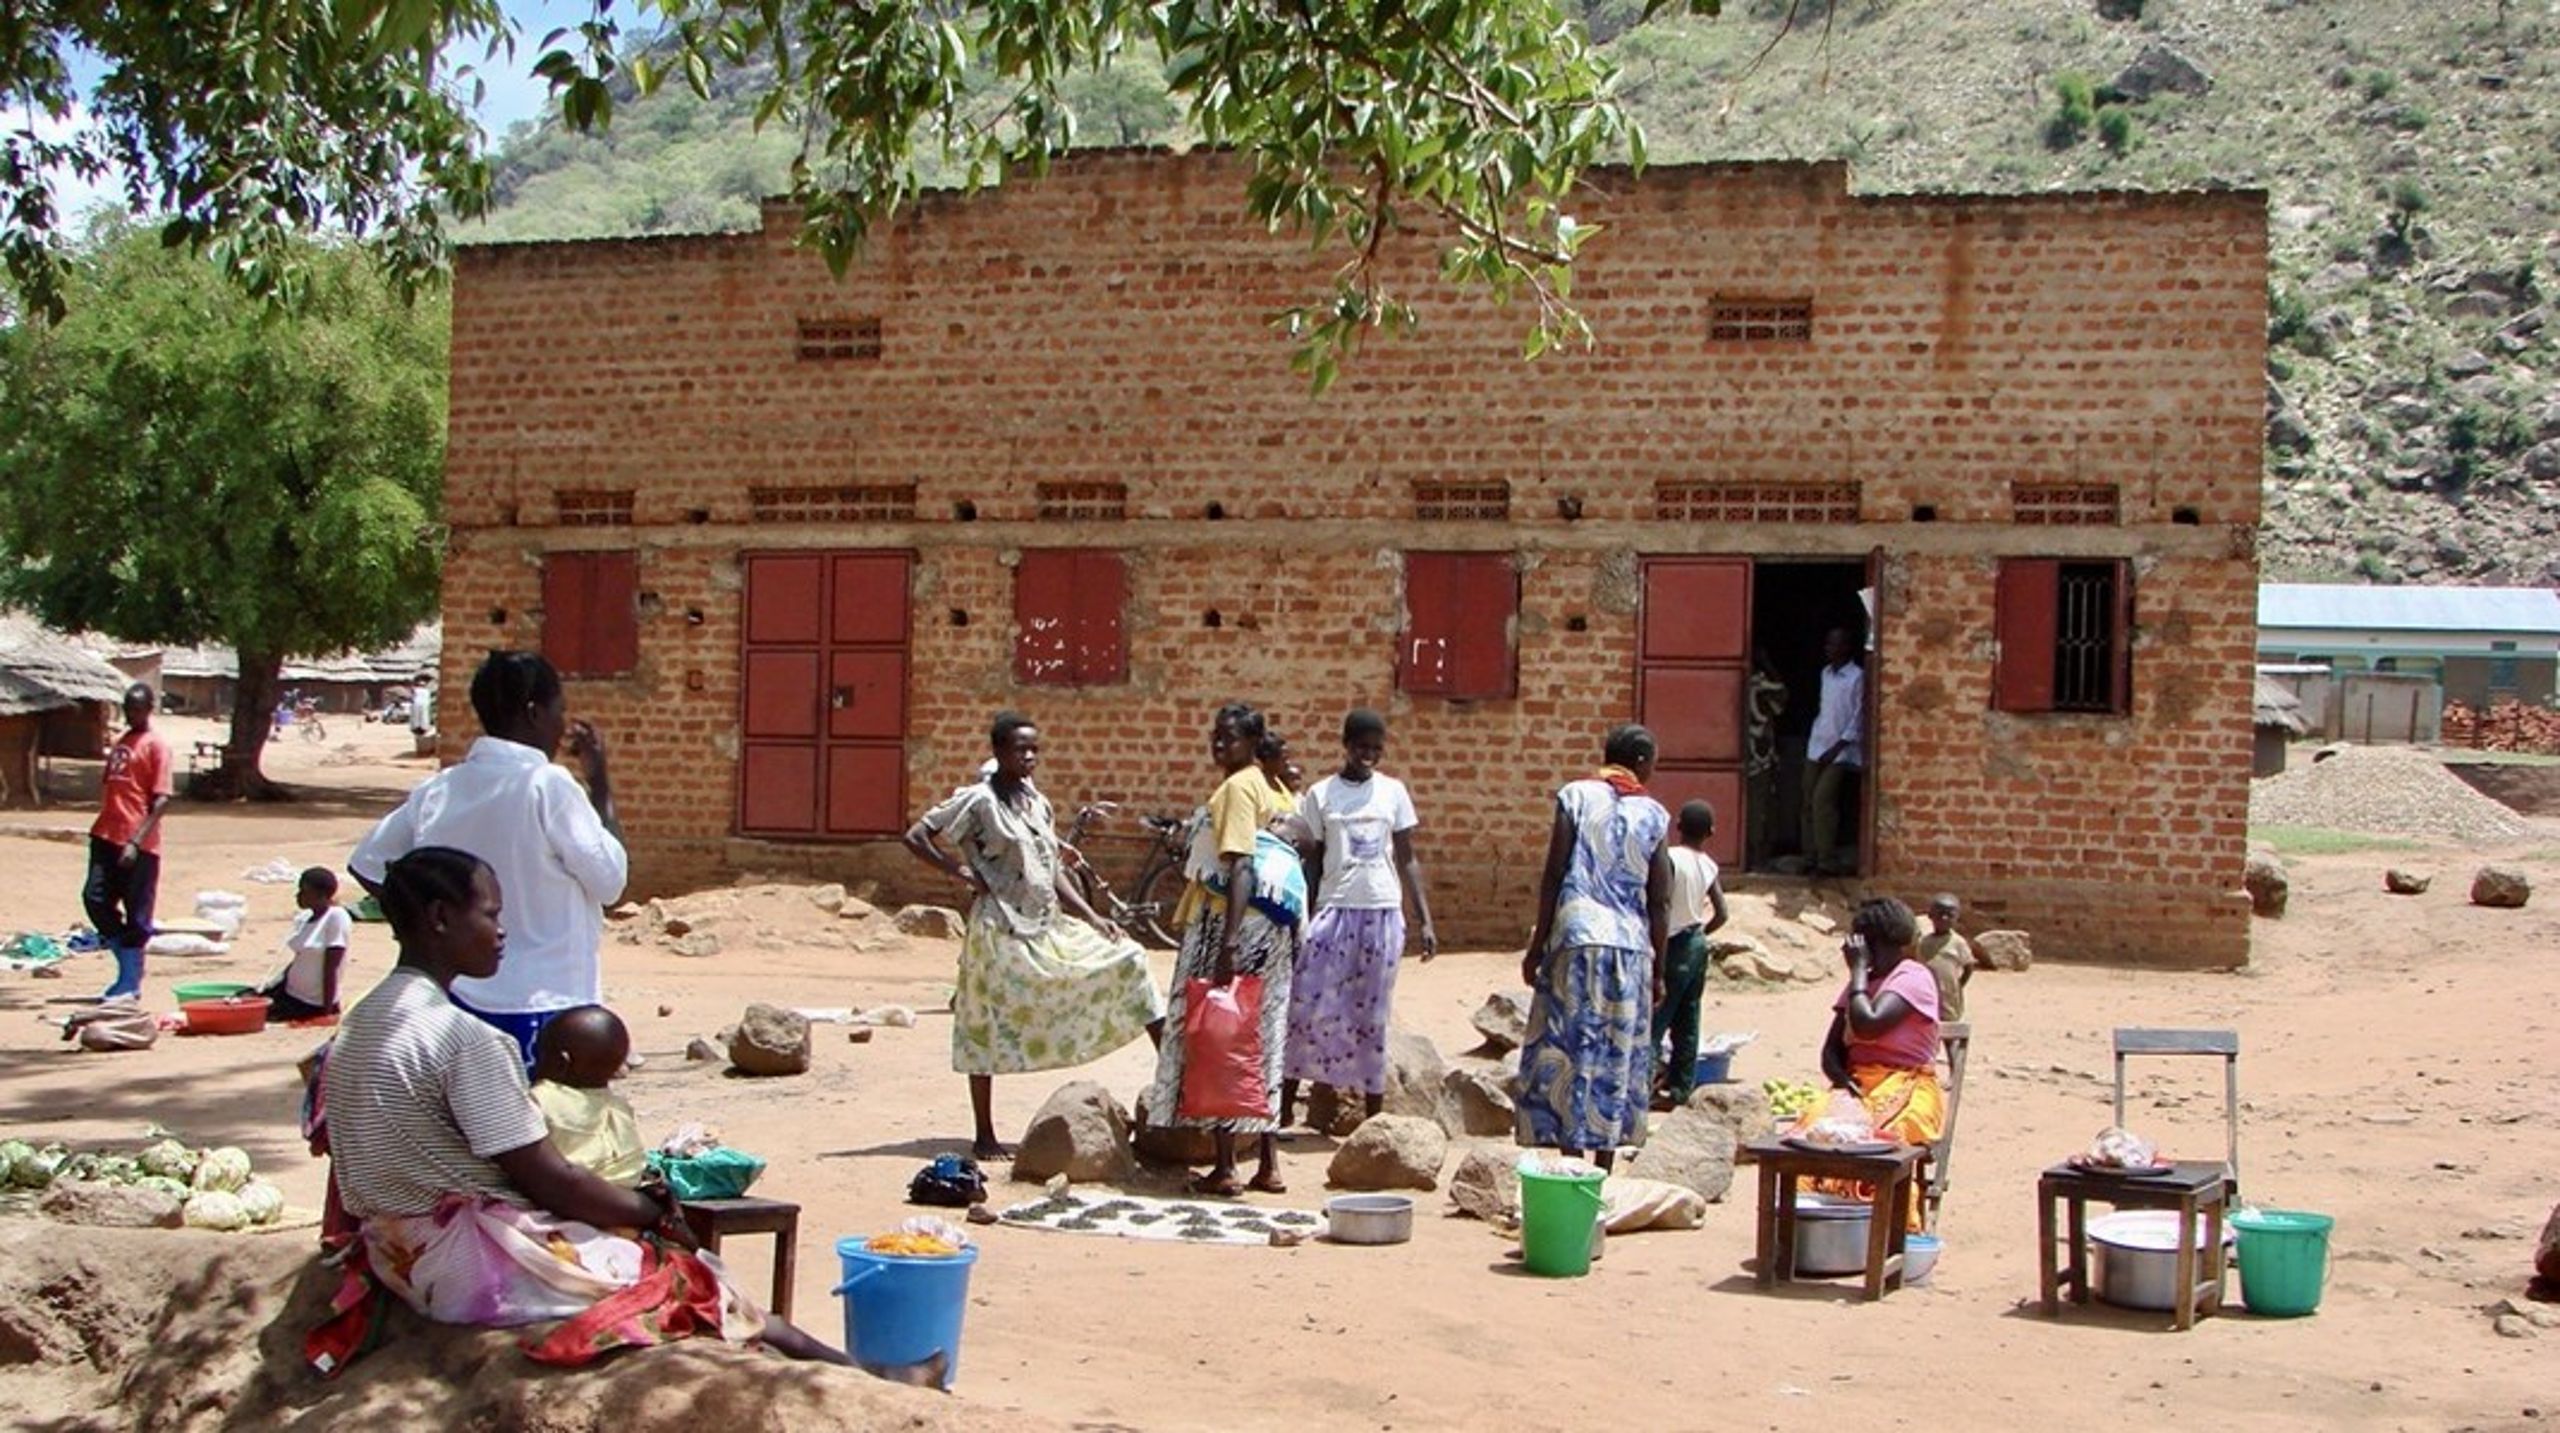 <div>I et land med massiv fattigdom og arbejdsløshed er du stort set chanceløs, hvis du ikke har forbindelser de rigtige steder, skriver Knud Vilby. På billedet forsøger unge kvinder at sælge, hvad de kan, i det nordlige Uganda.<br></div>